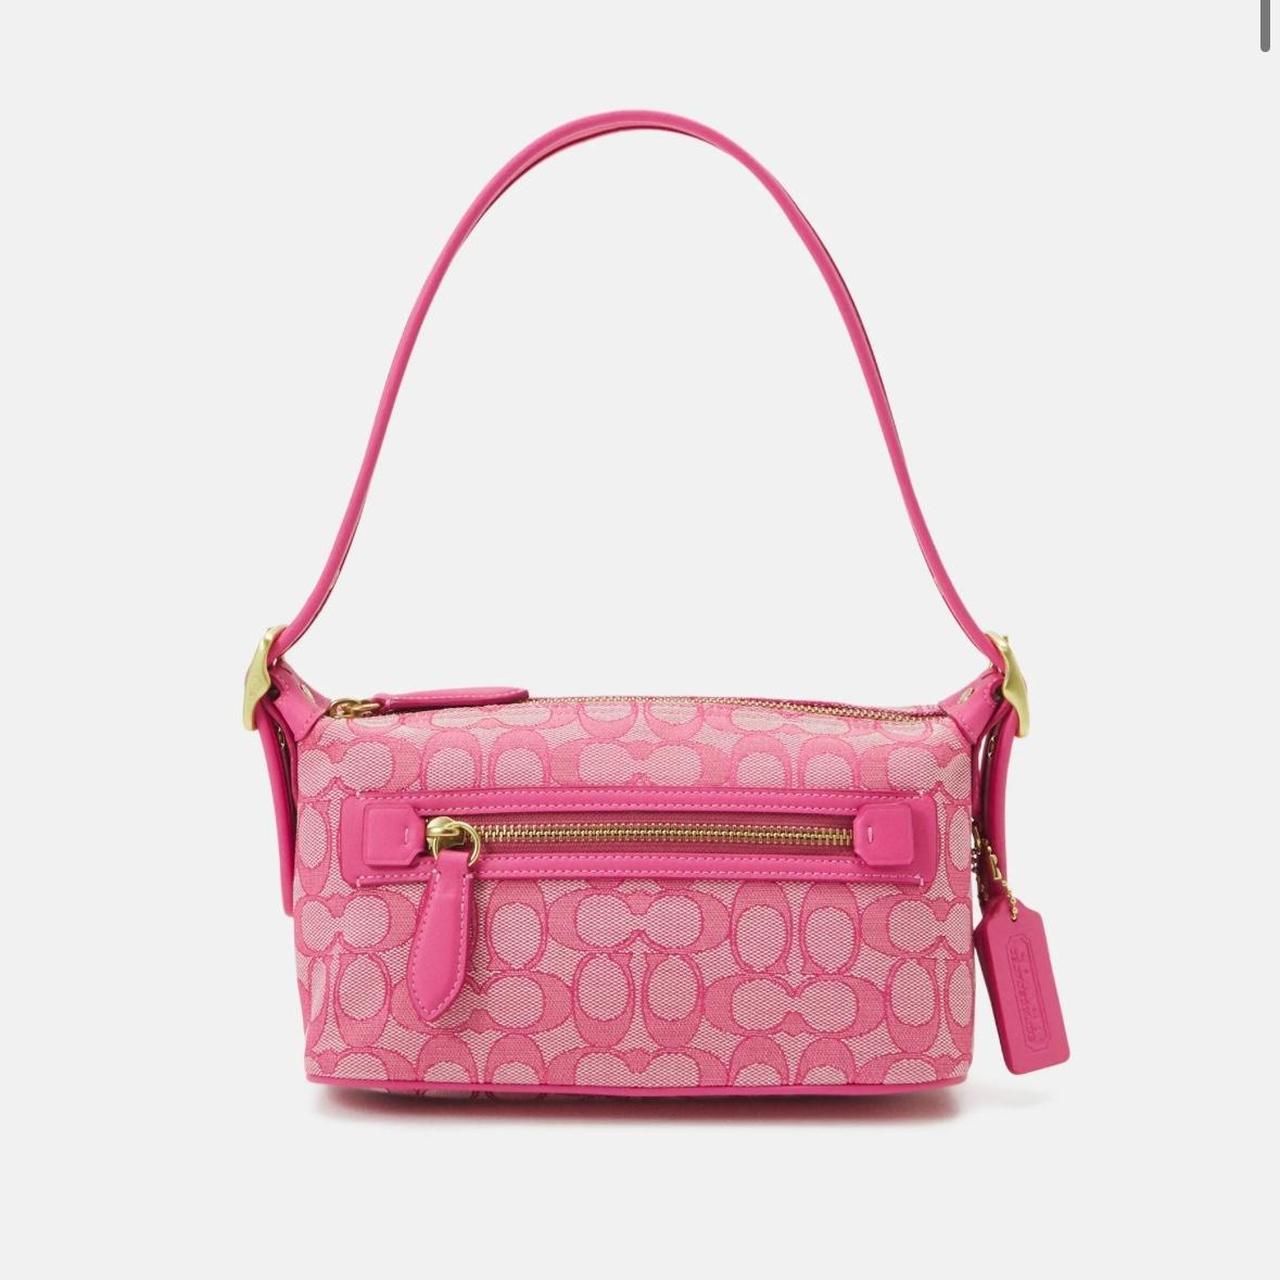 Coach signature Demi bag in petunia/hot pink!... - Depop